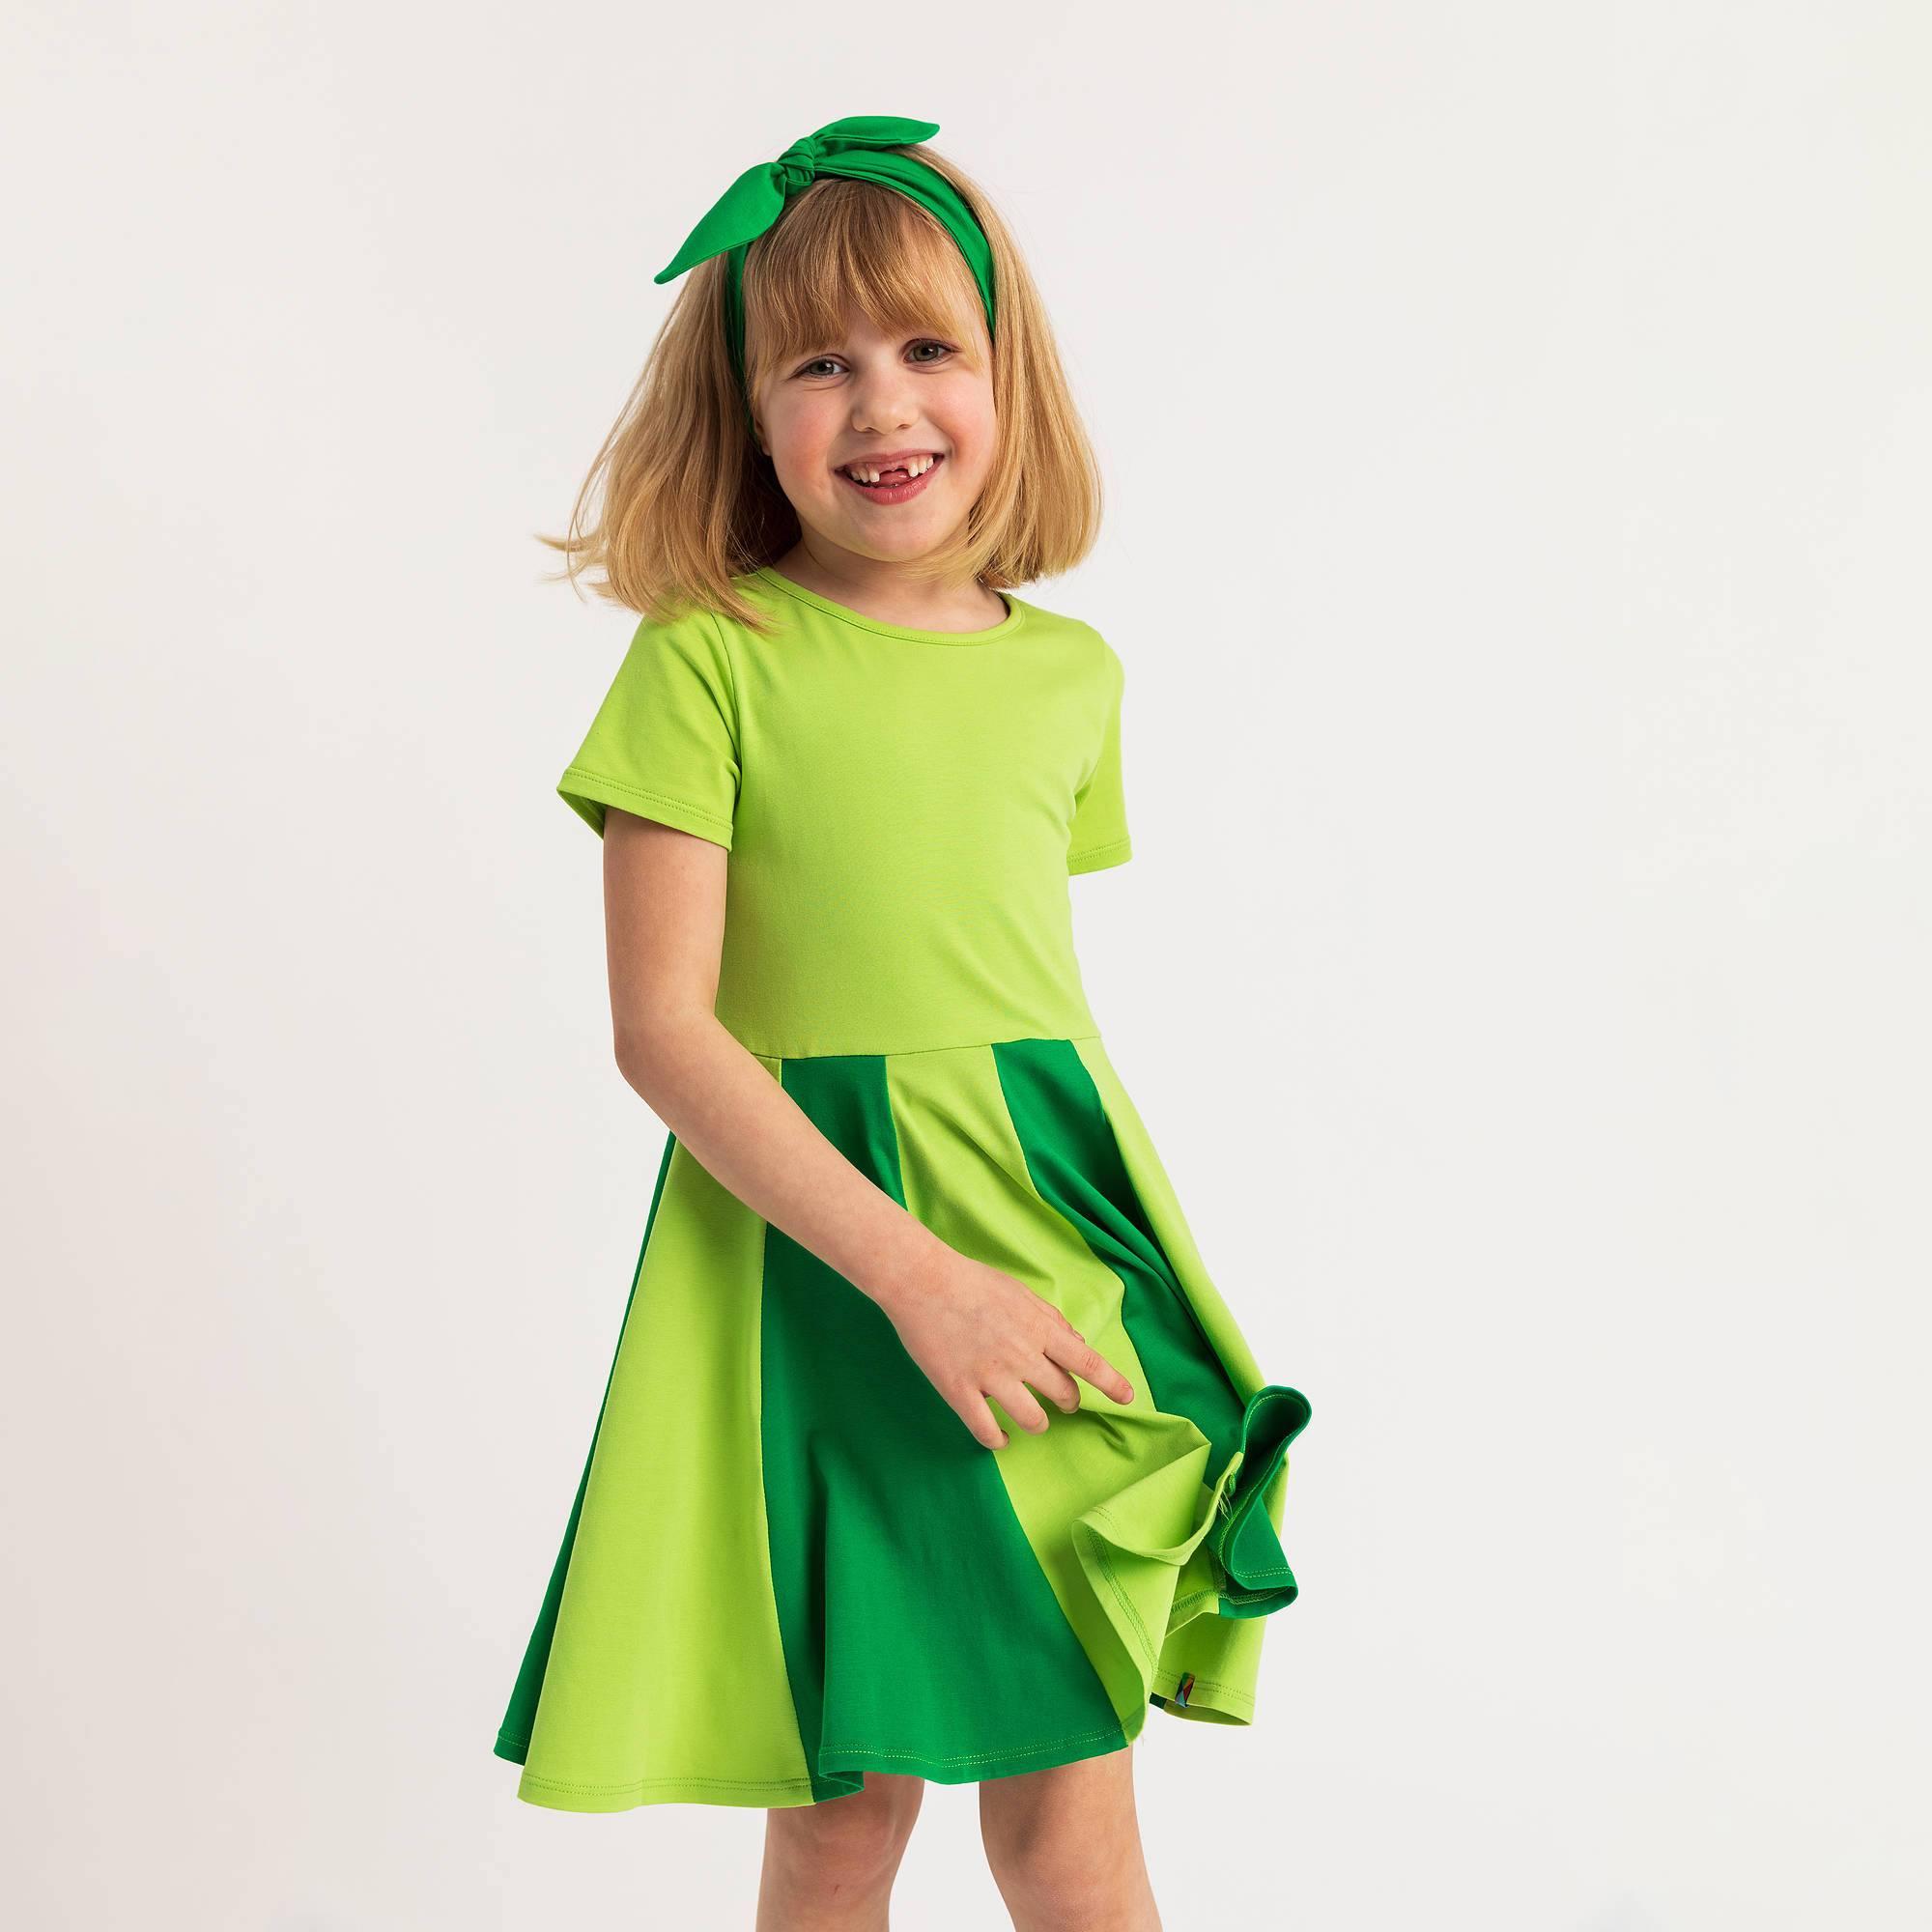 Limonkowo-zielona sukiena z kolorową falbaną